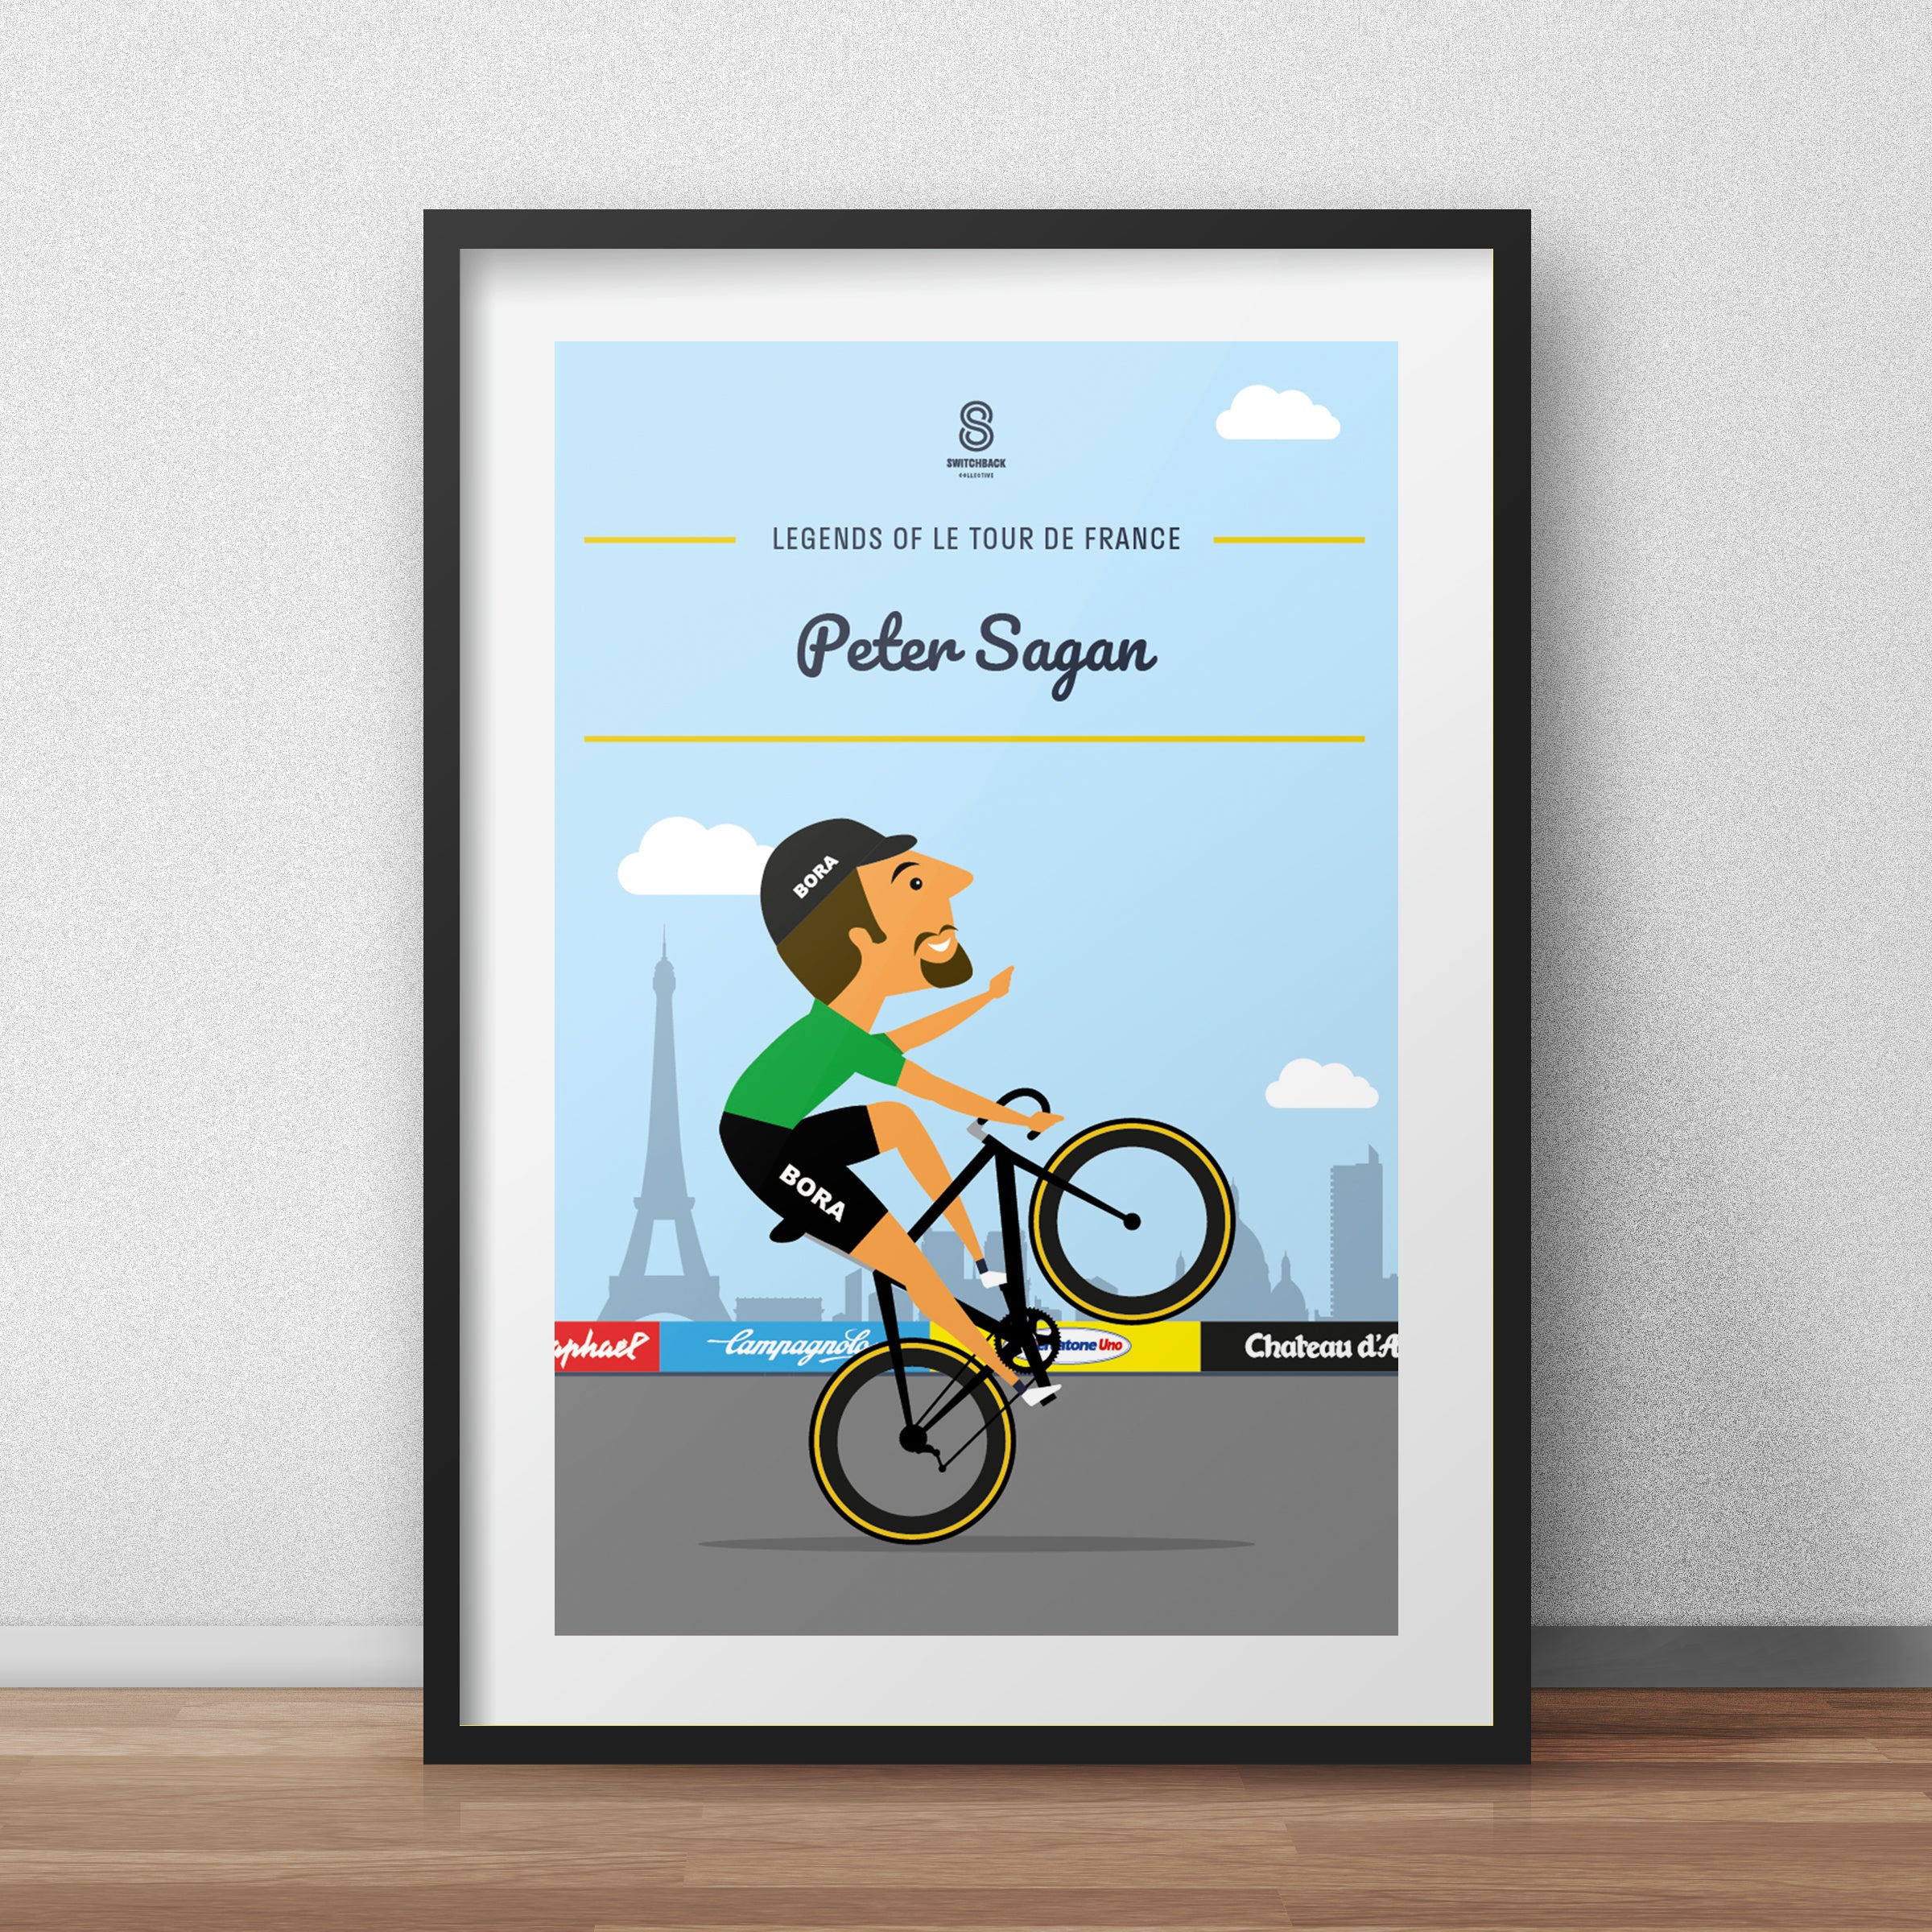 Peter Sagan 'The Wheelie' - Legends of Le Tour De France